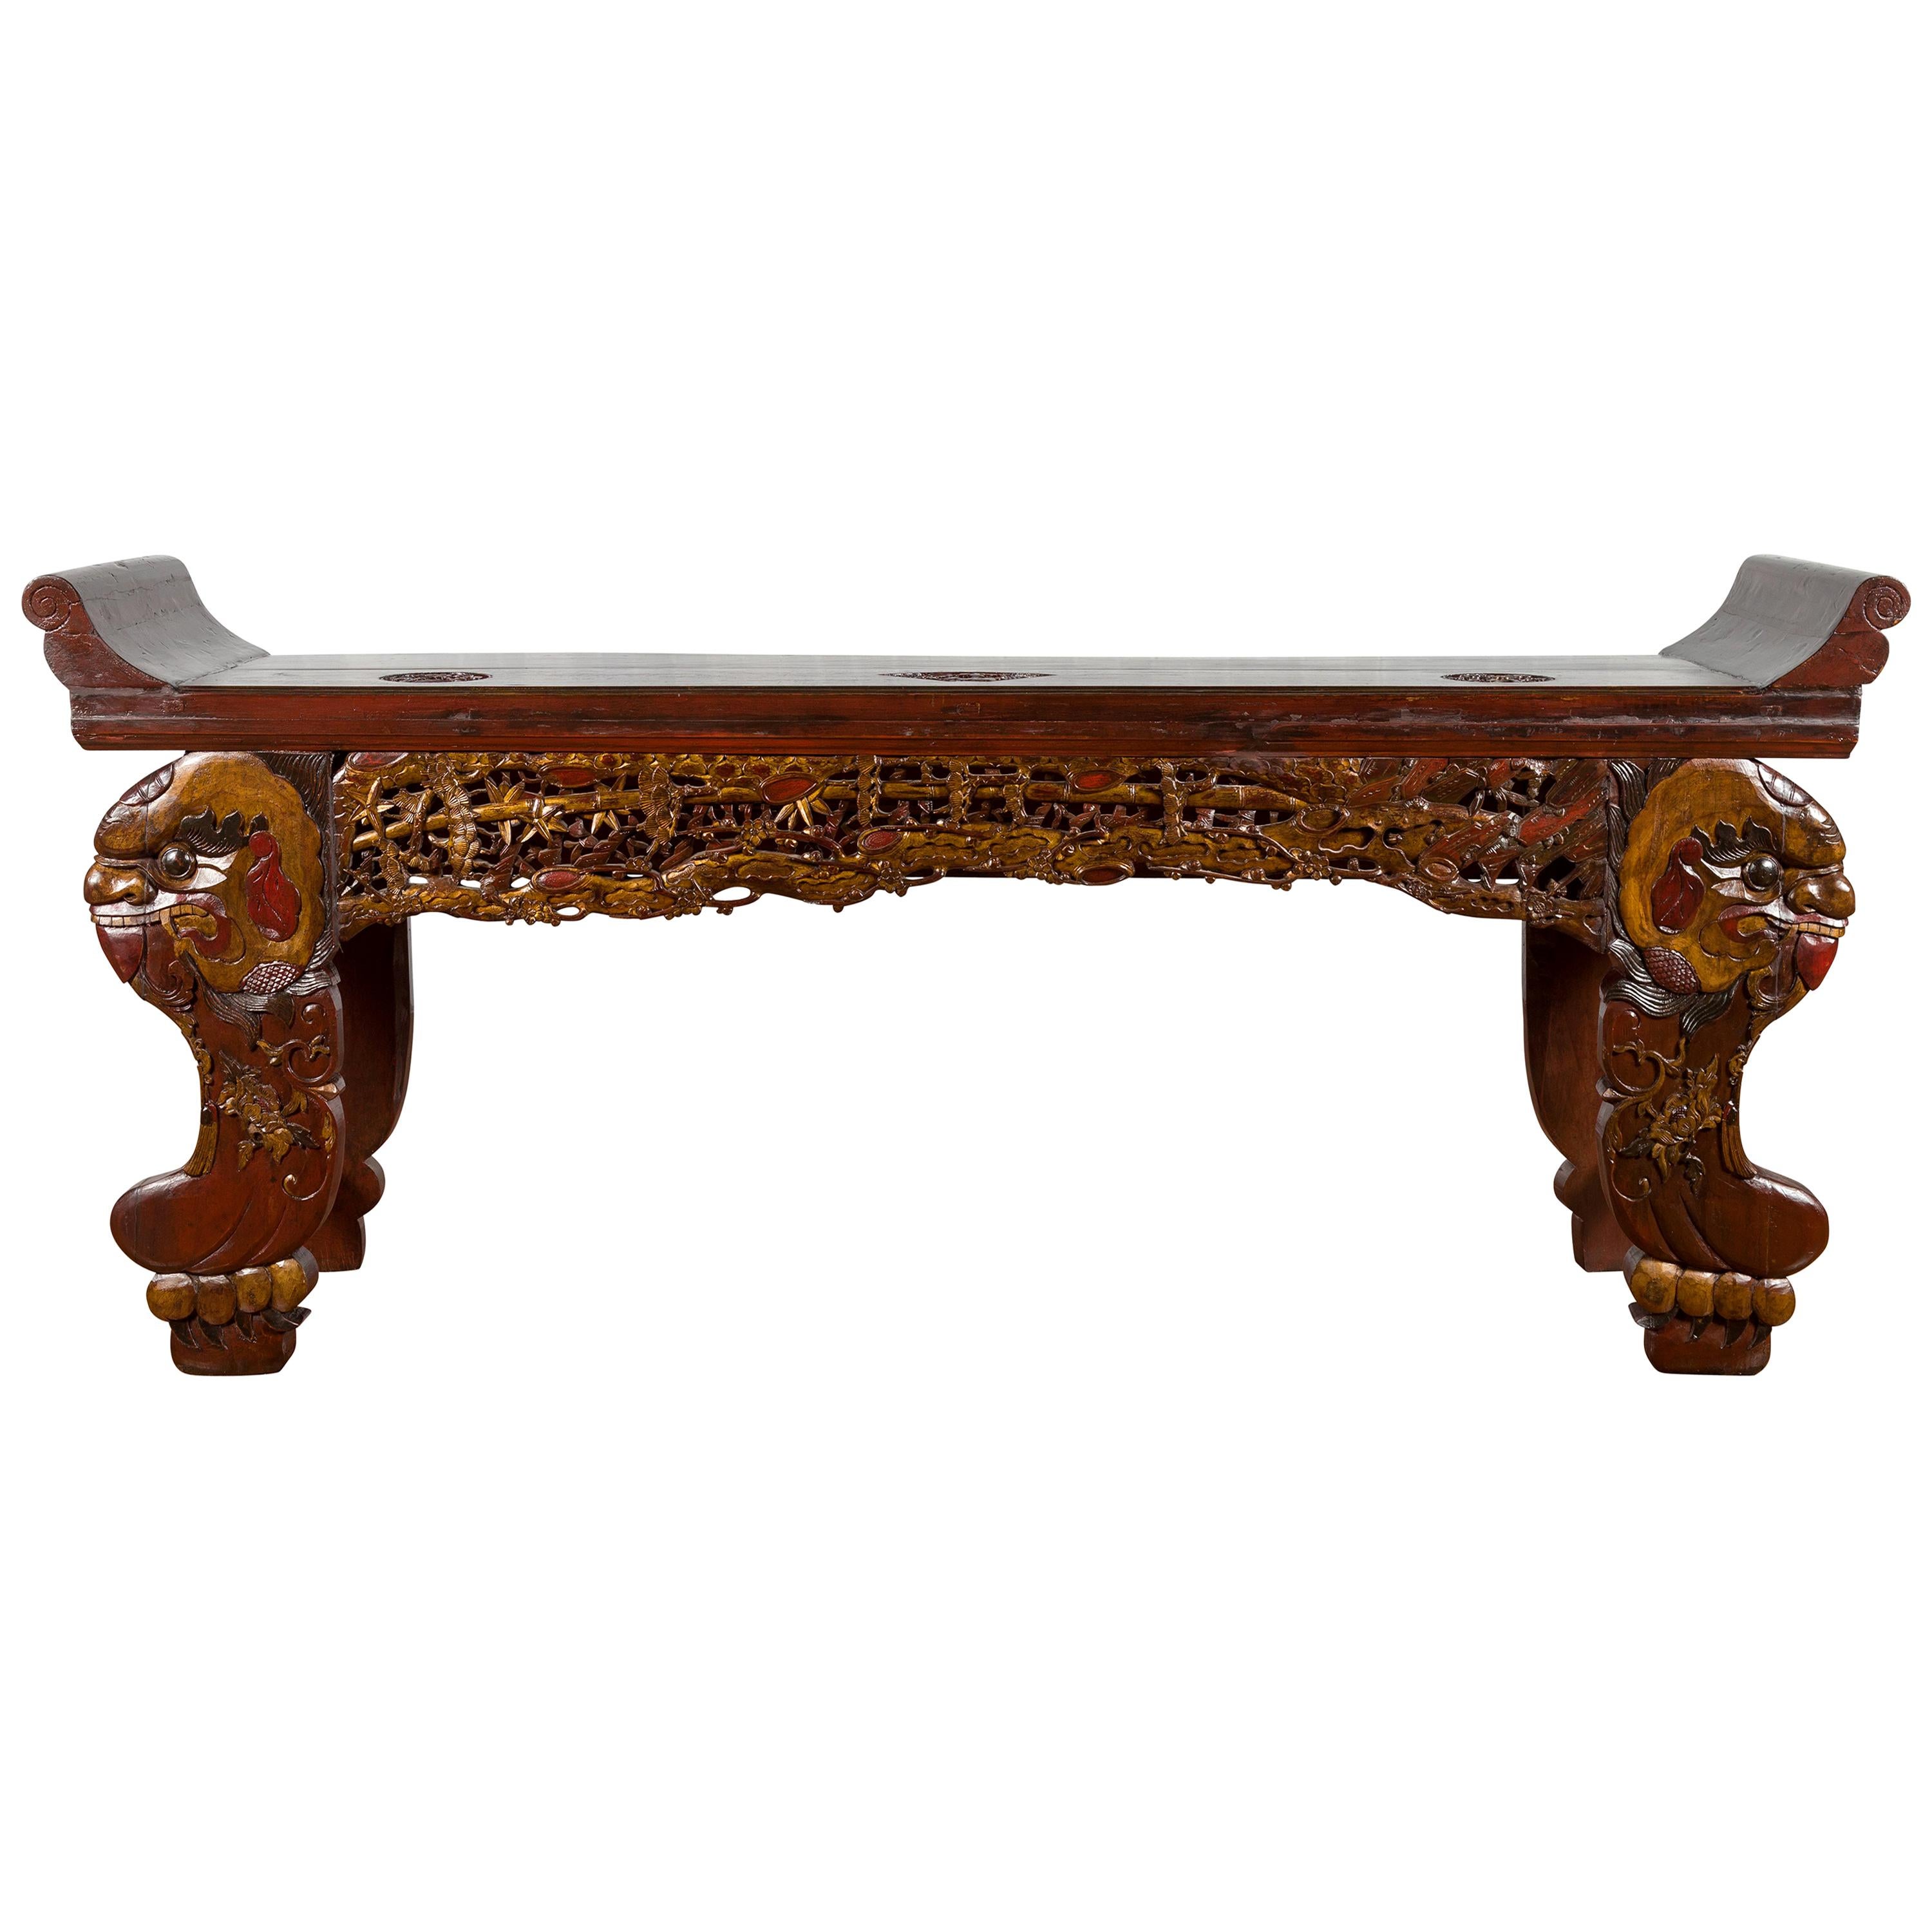 Table console sculptée du 19ème siècle de la dynastie chinoise Qing avec animaux mythiques